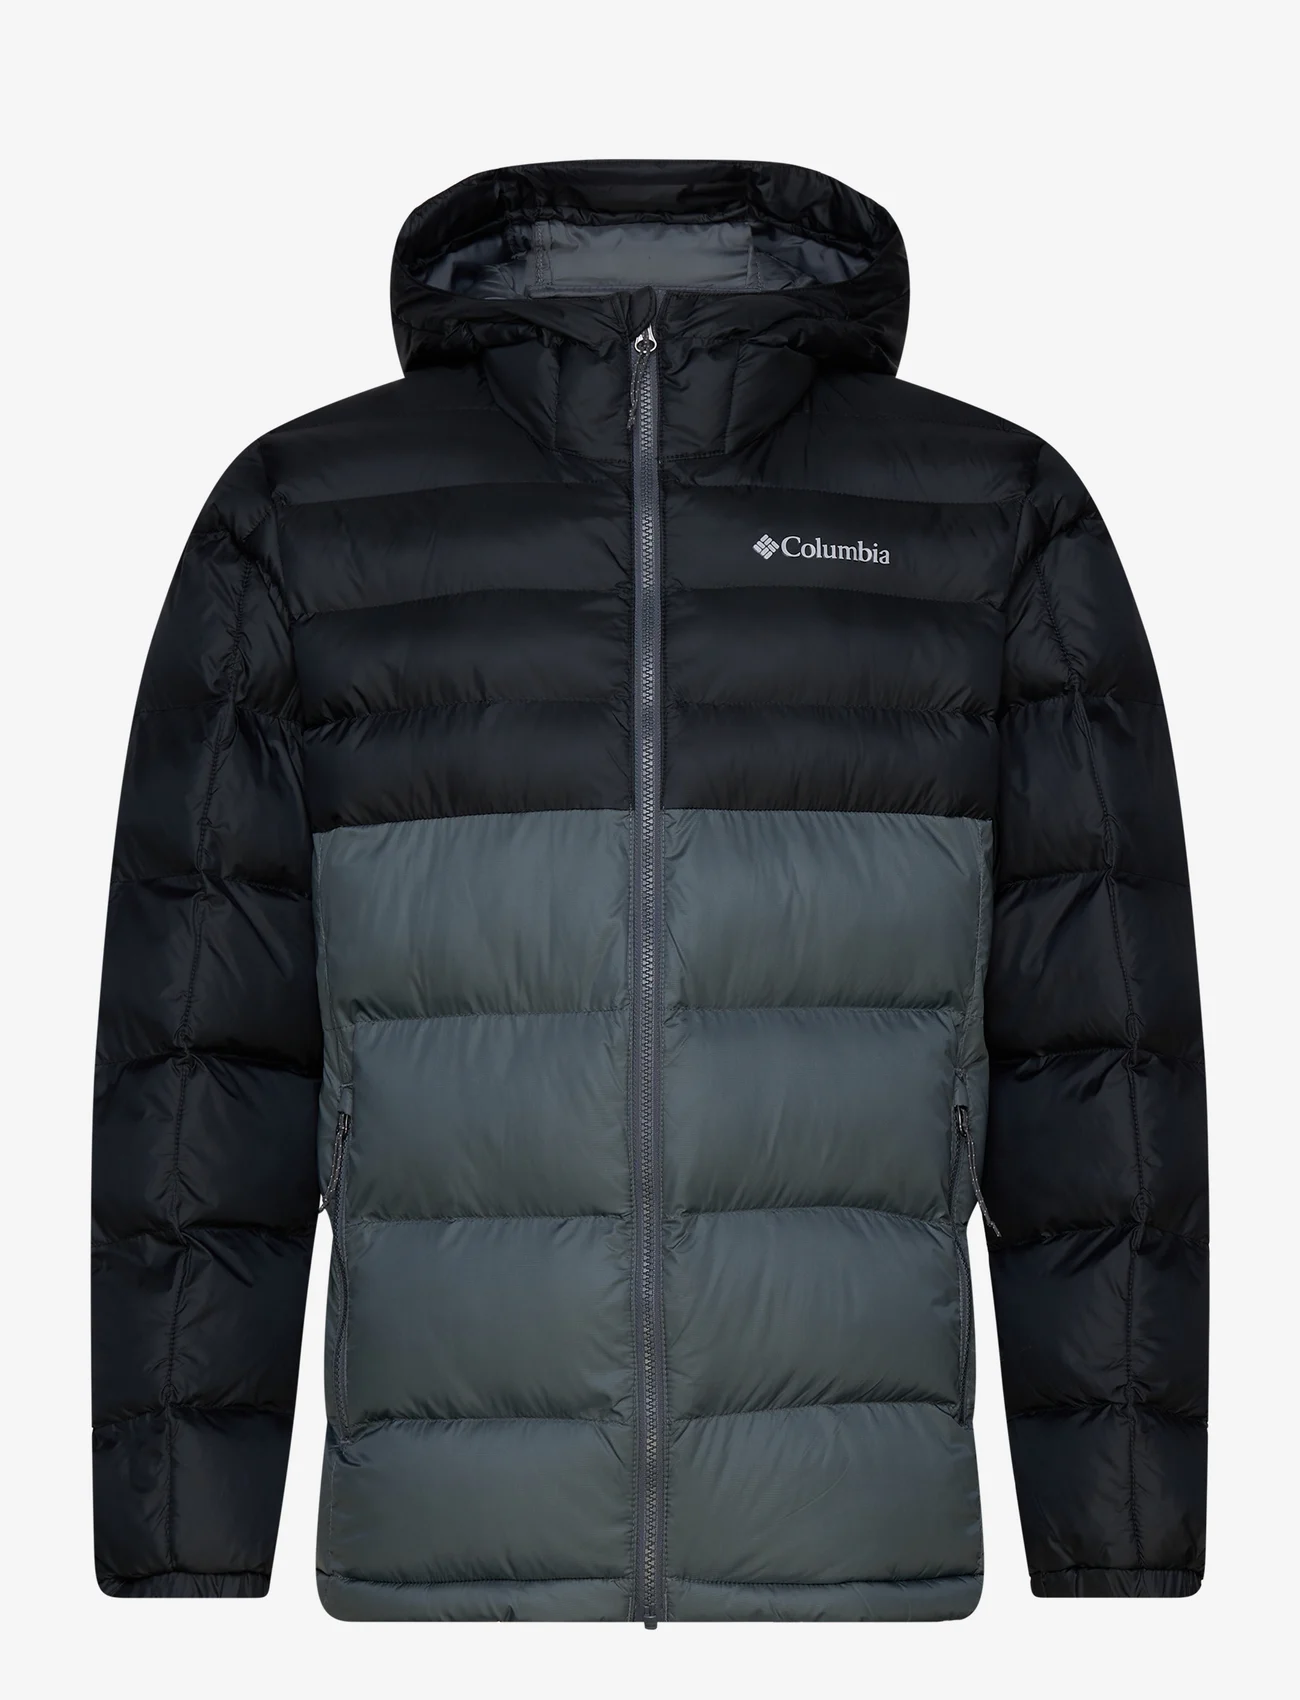 Columbia Sportswear - Buck Butte Insulated Hooded Jacket - outdoor- & regenjacken - graphite, black - 0